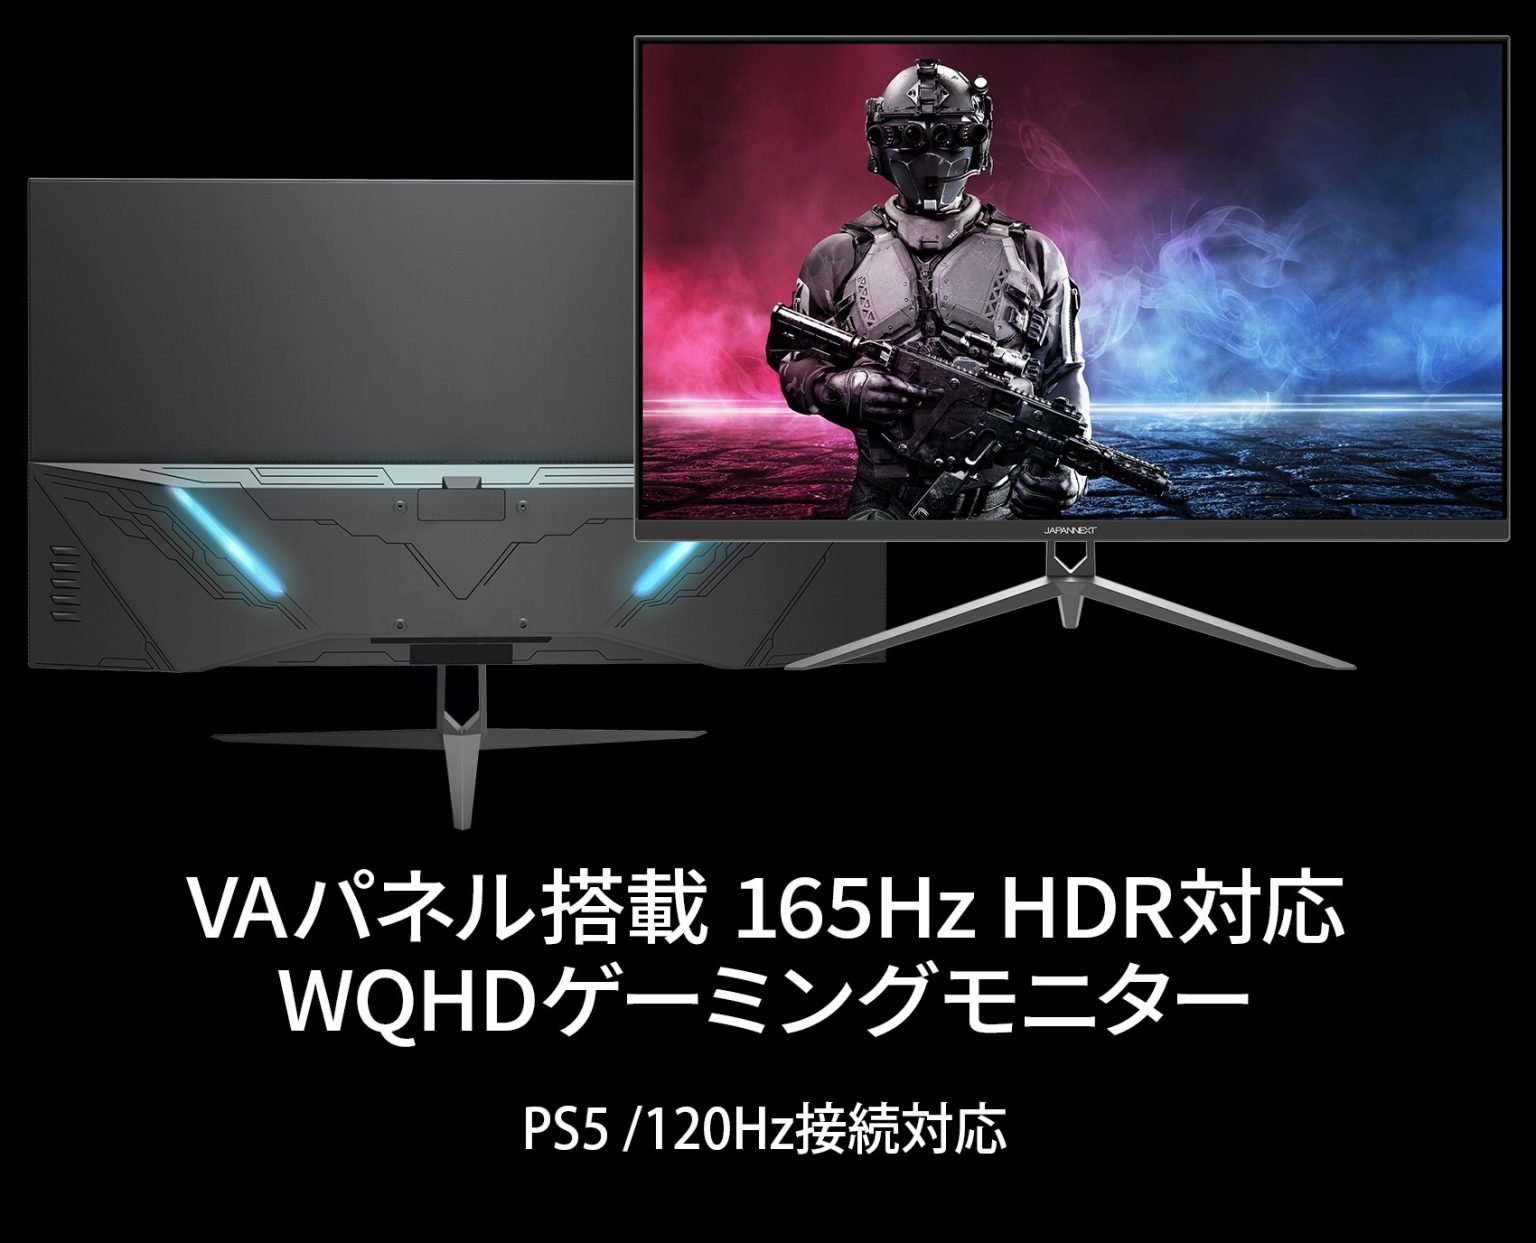 【Amazon限定モデル】JAPANNEXT「JN-V3150WQHDR165」 31.5インチVAパネル搭載、WQHD解像度(2560×